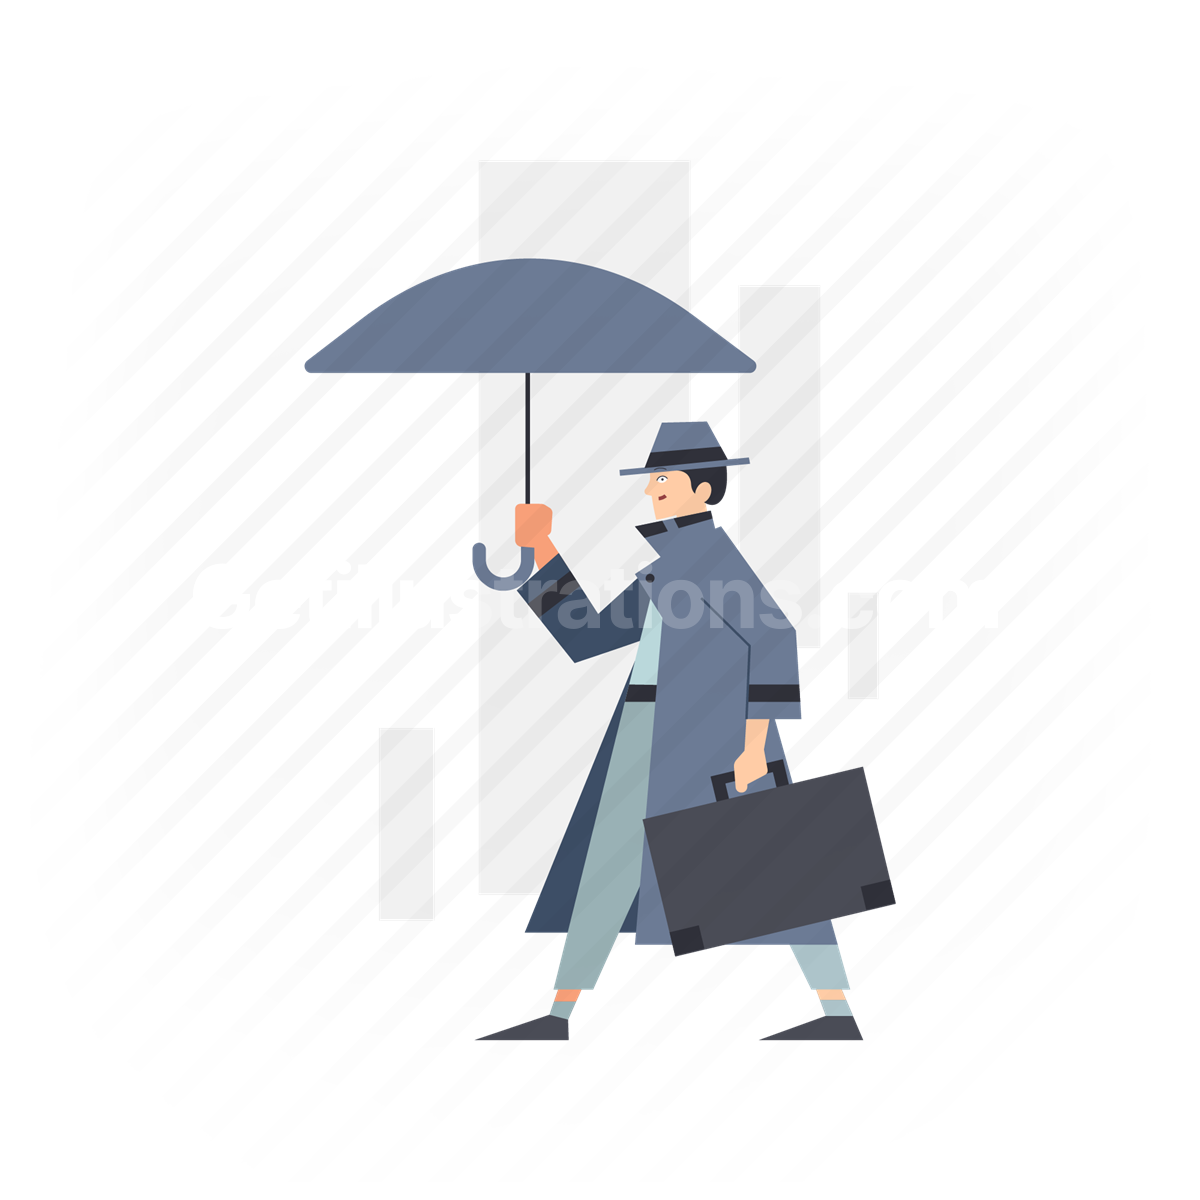 man, suitcase, umbrella, suit, business